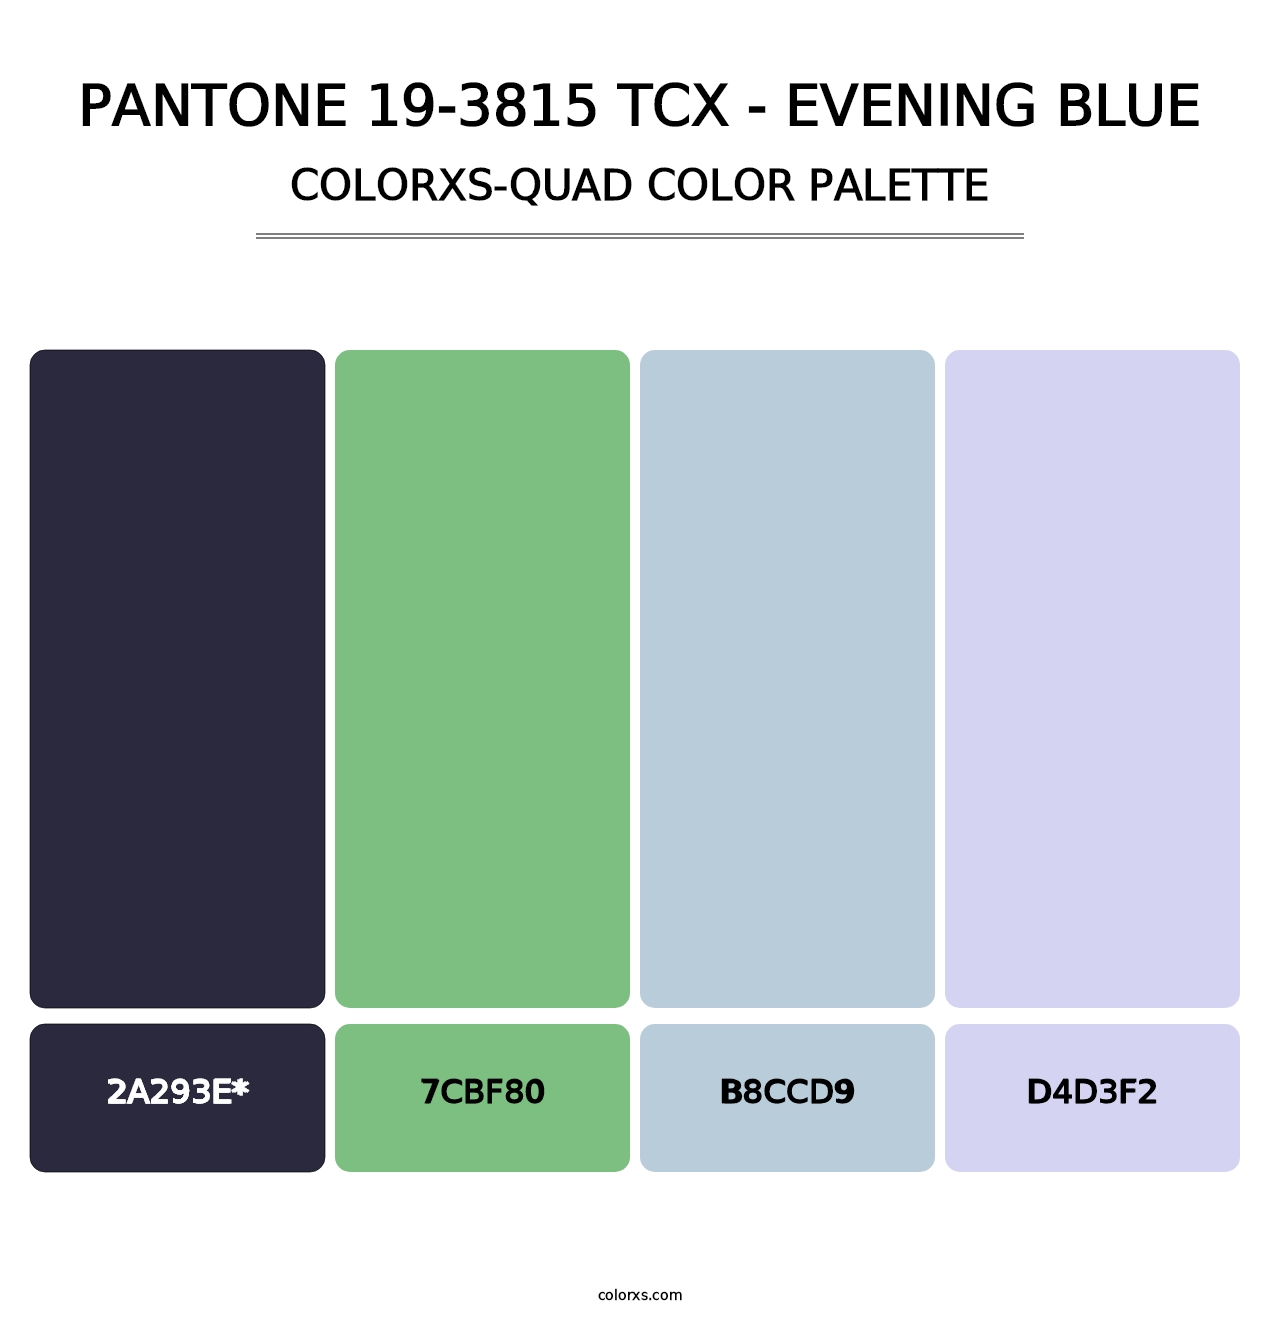 PANTONE 19-3815 TCX - Evening Blue - Colorxs Quad Palette